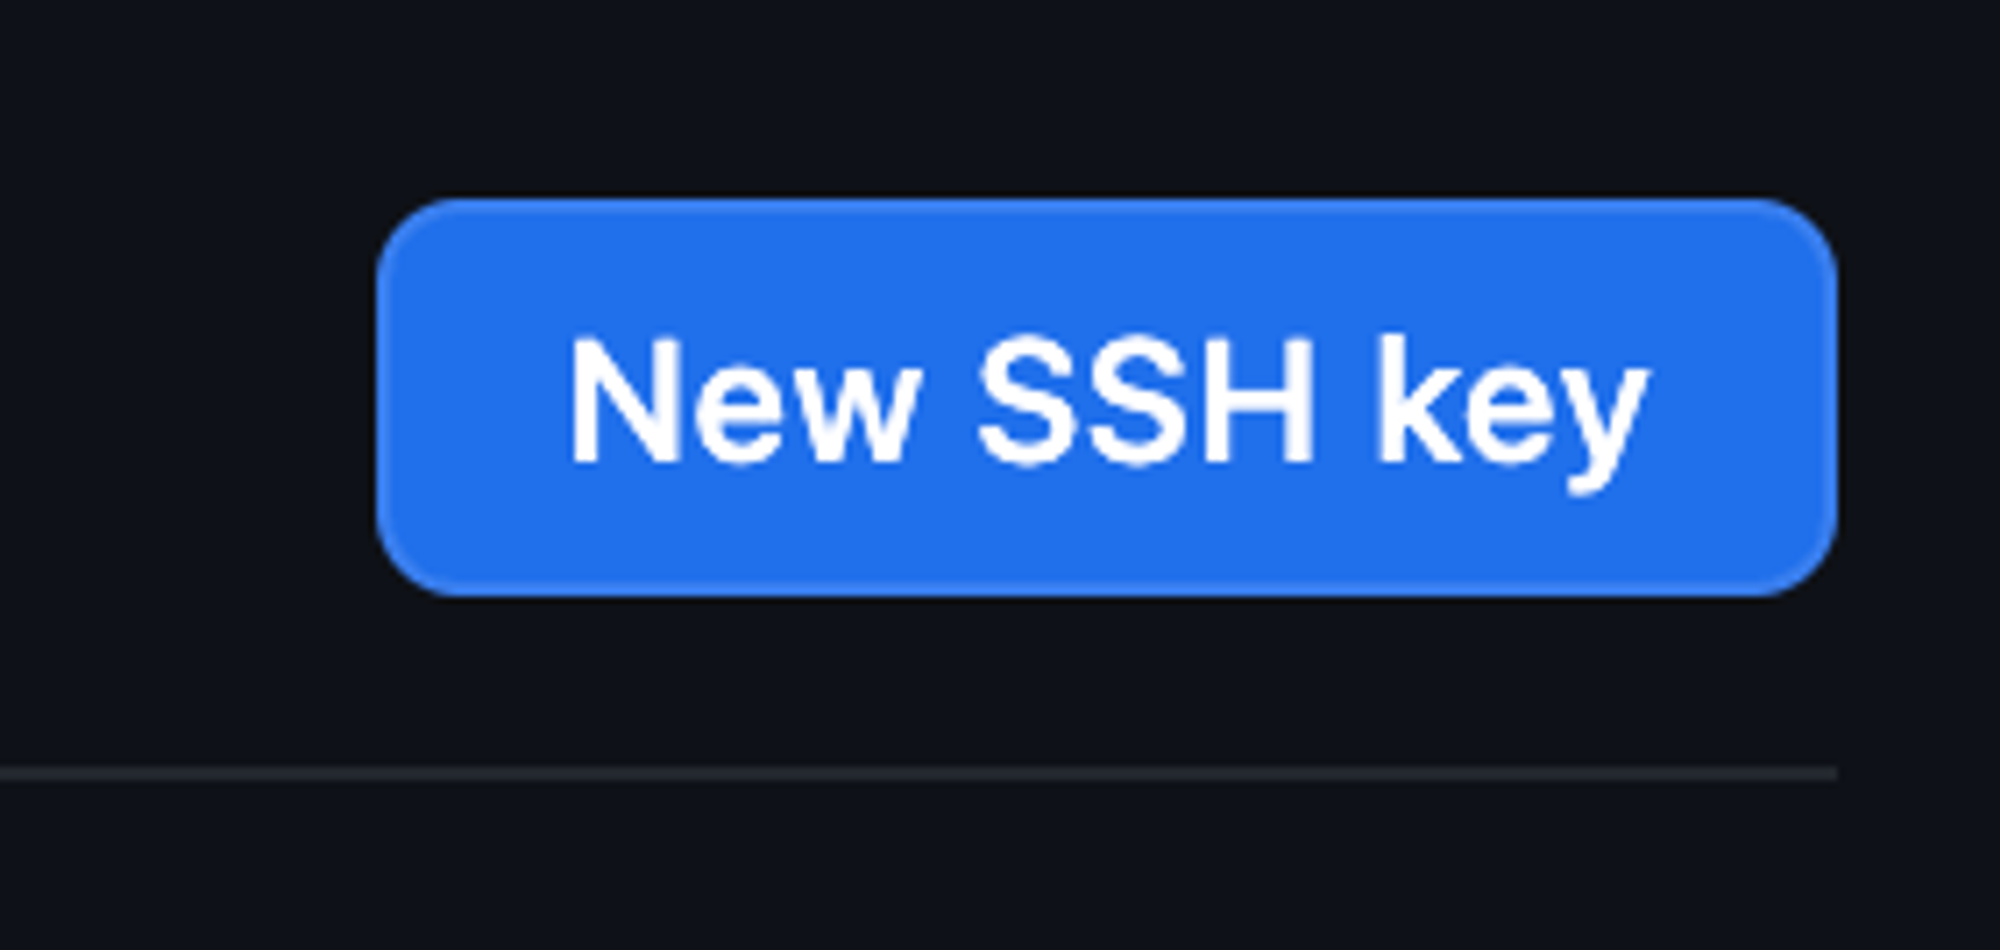 New SSH Key 버튼